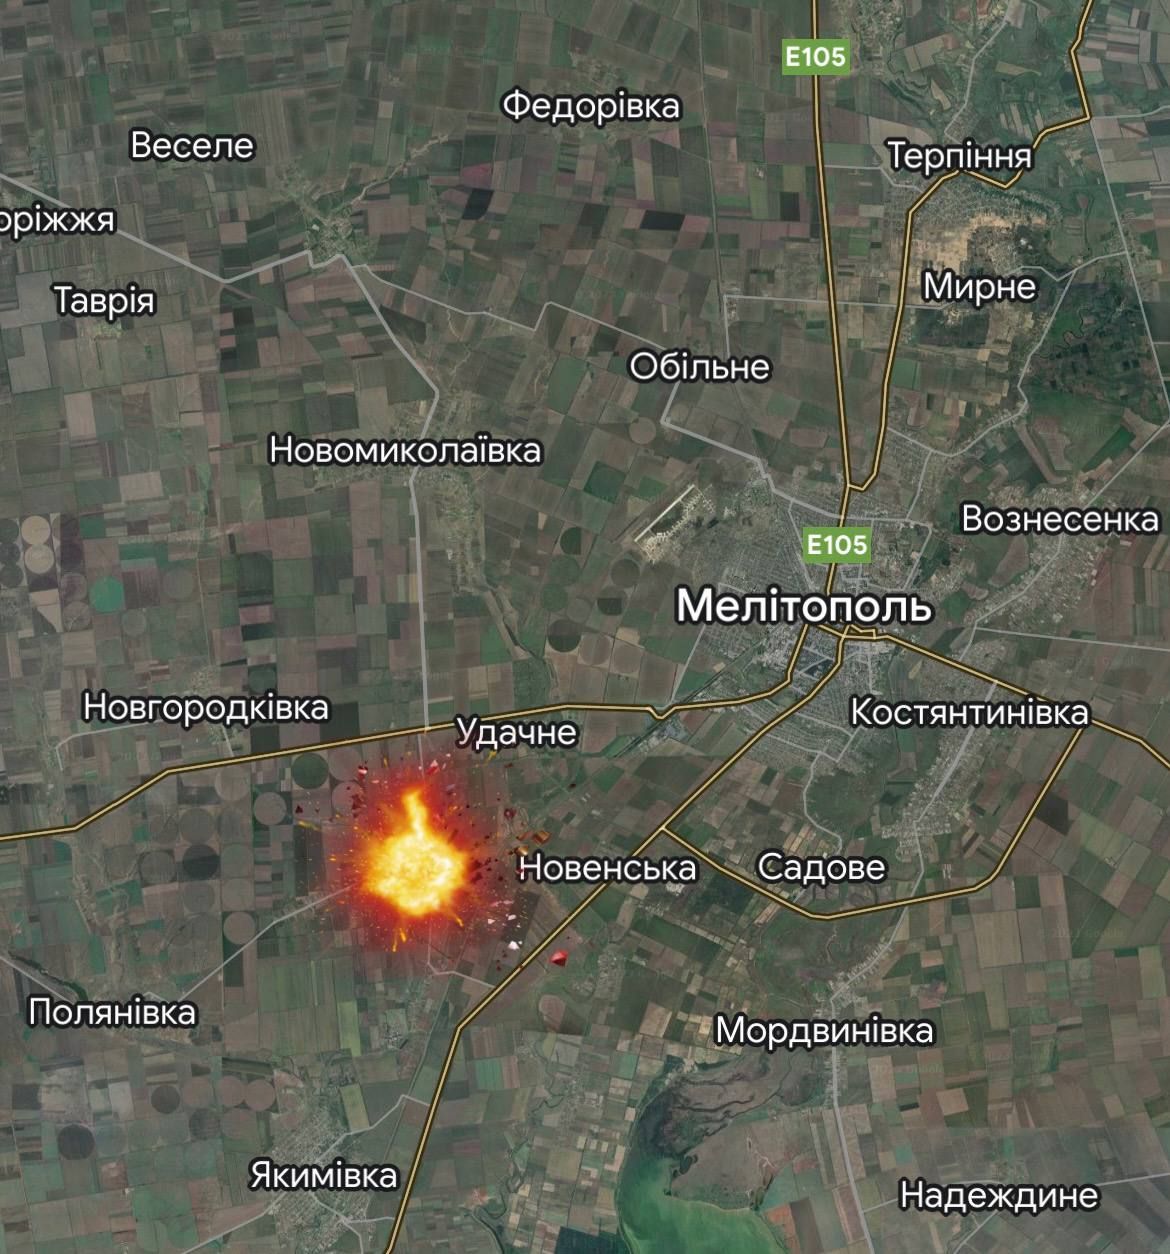 Біля Мелітополя стався вибух на залізниці, а в Бердянську знову прилетіло в району порту